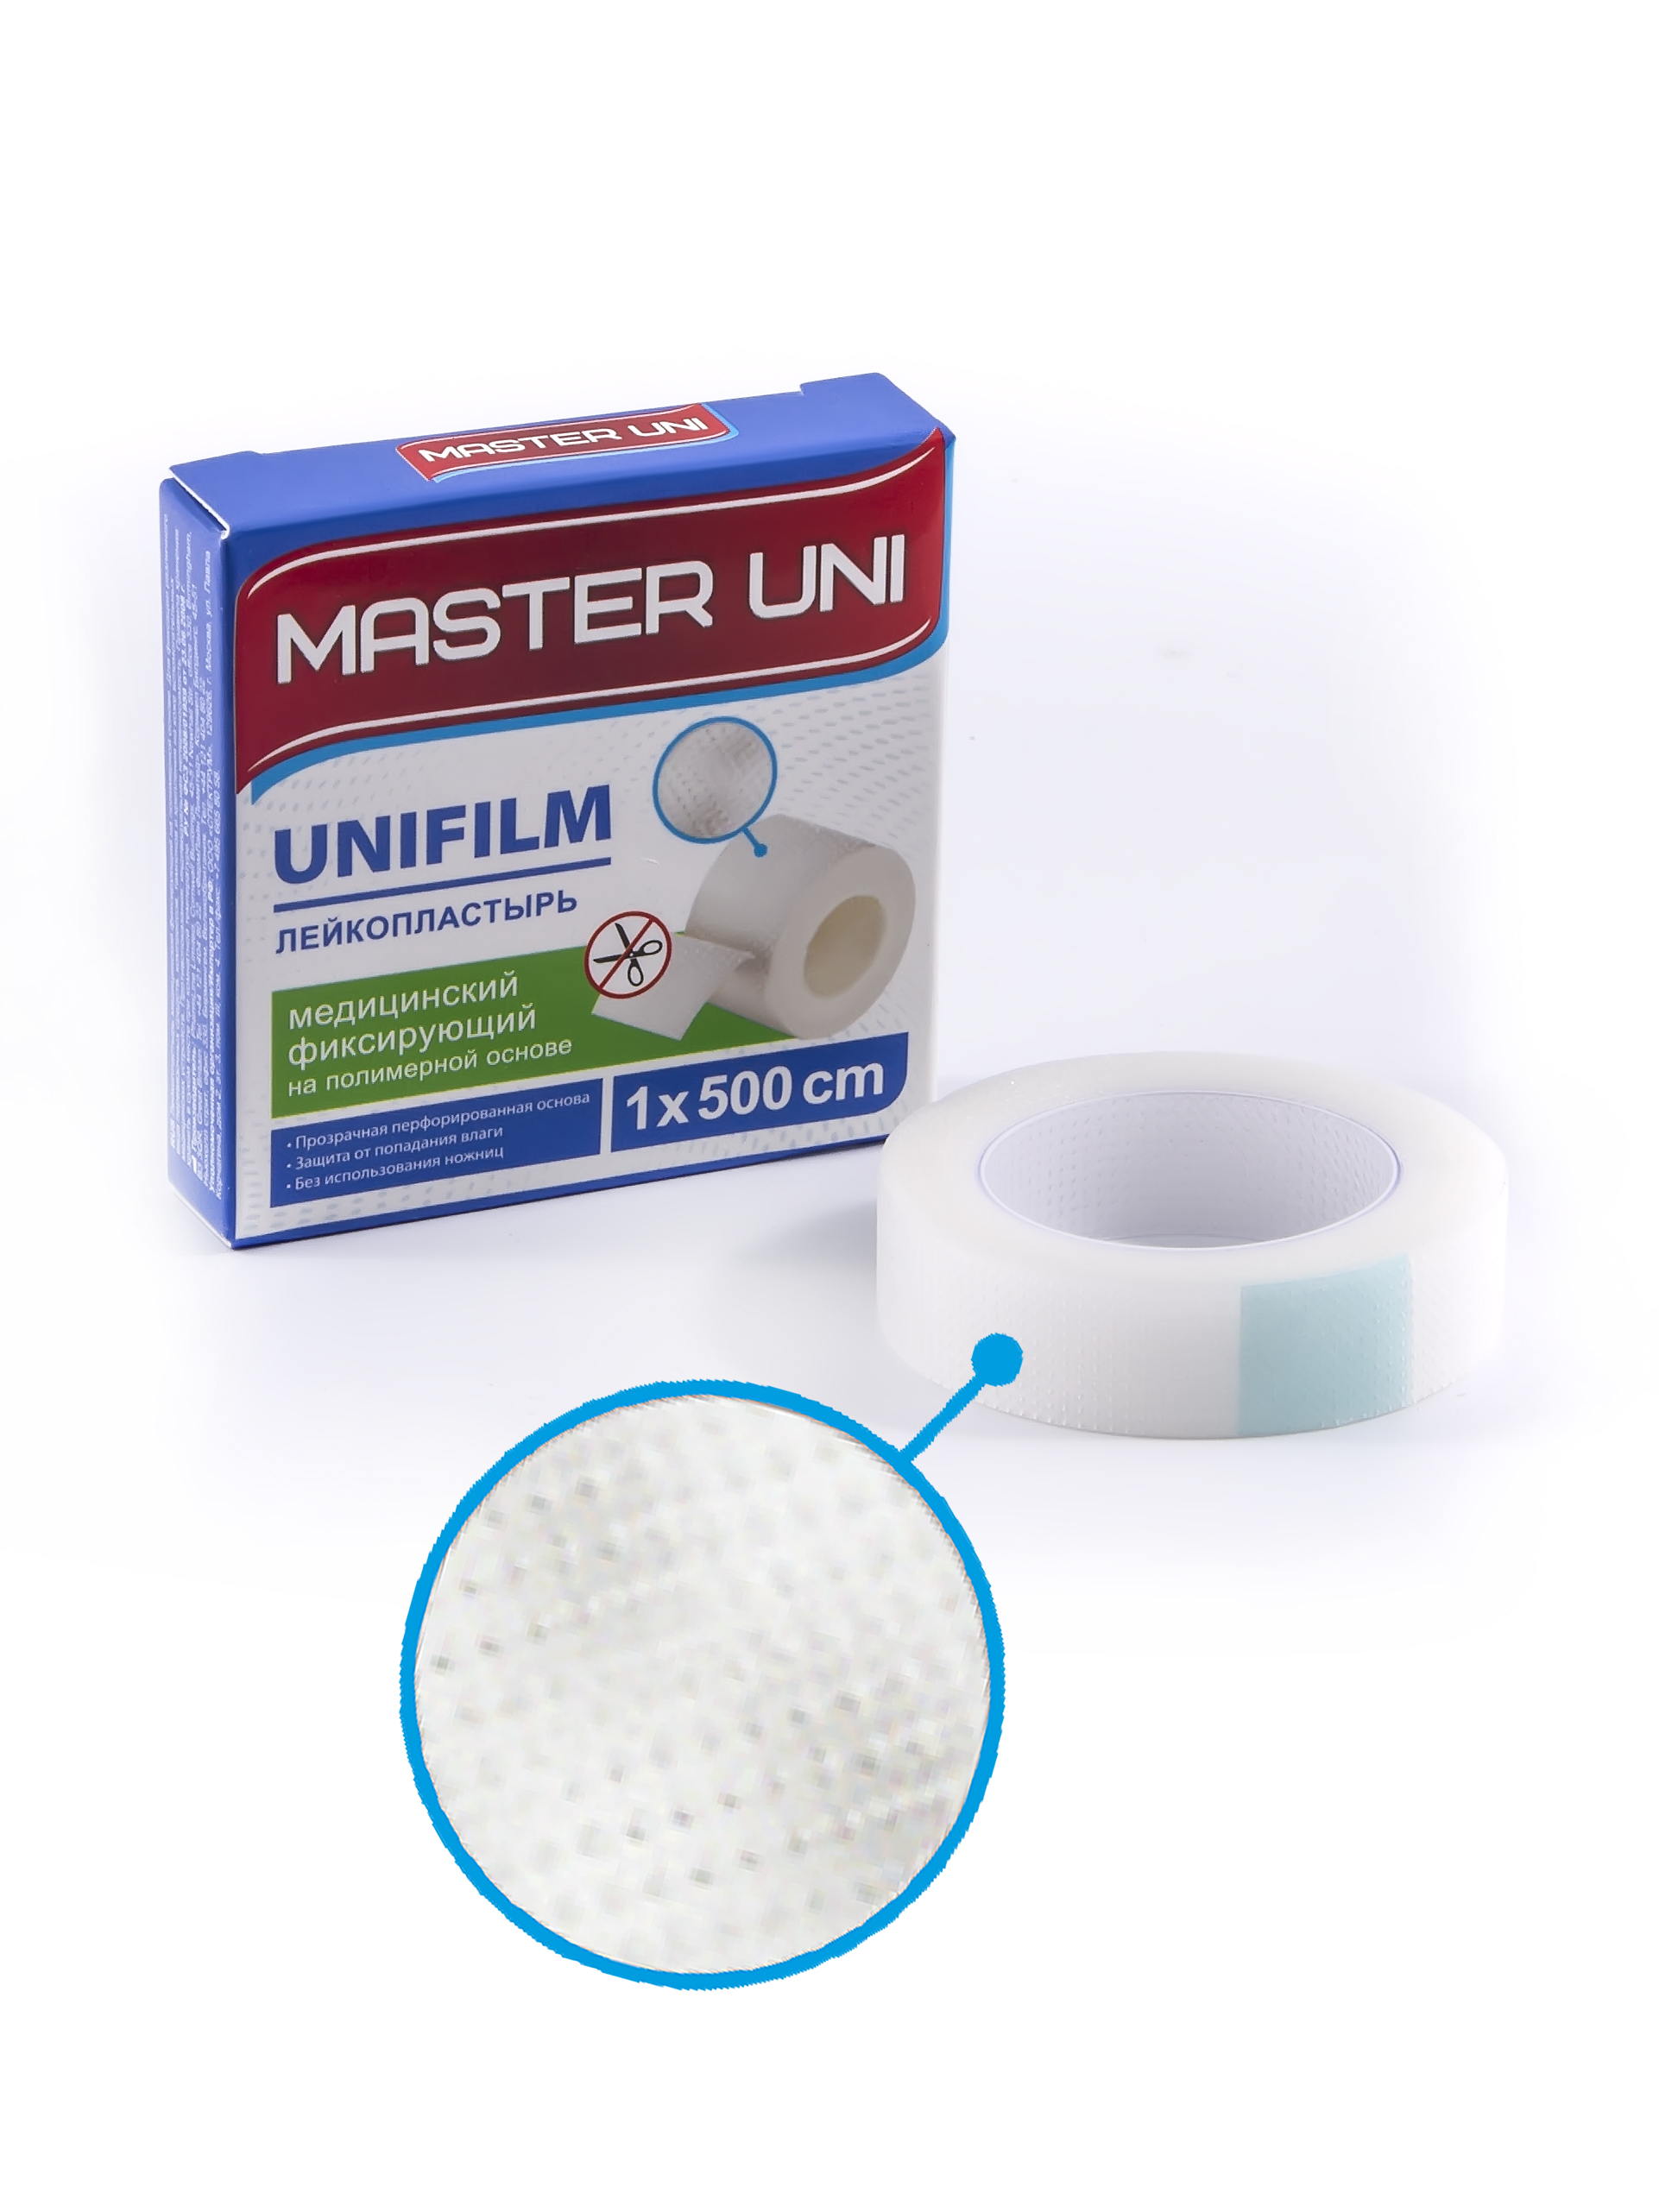 Купить UNIFILM Лейкопластырь 1 х 500 см на полимерной основе, Пластырь Master Uni Unifilm фиксирующий на полимерной основе 1 х 500 см